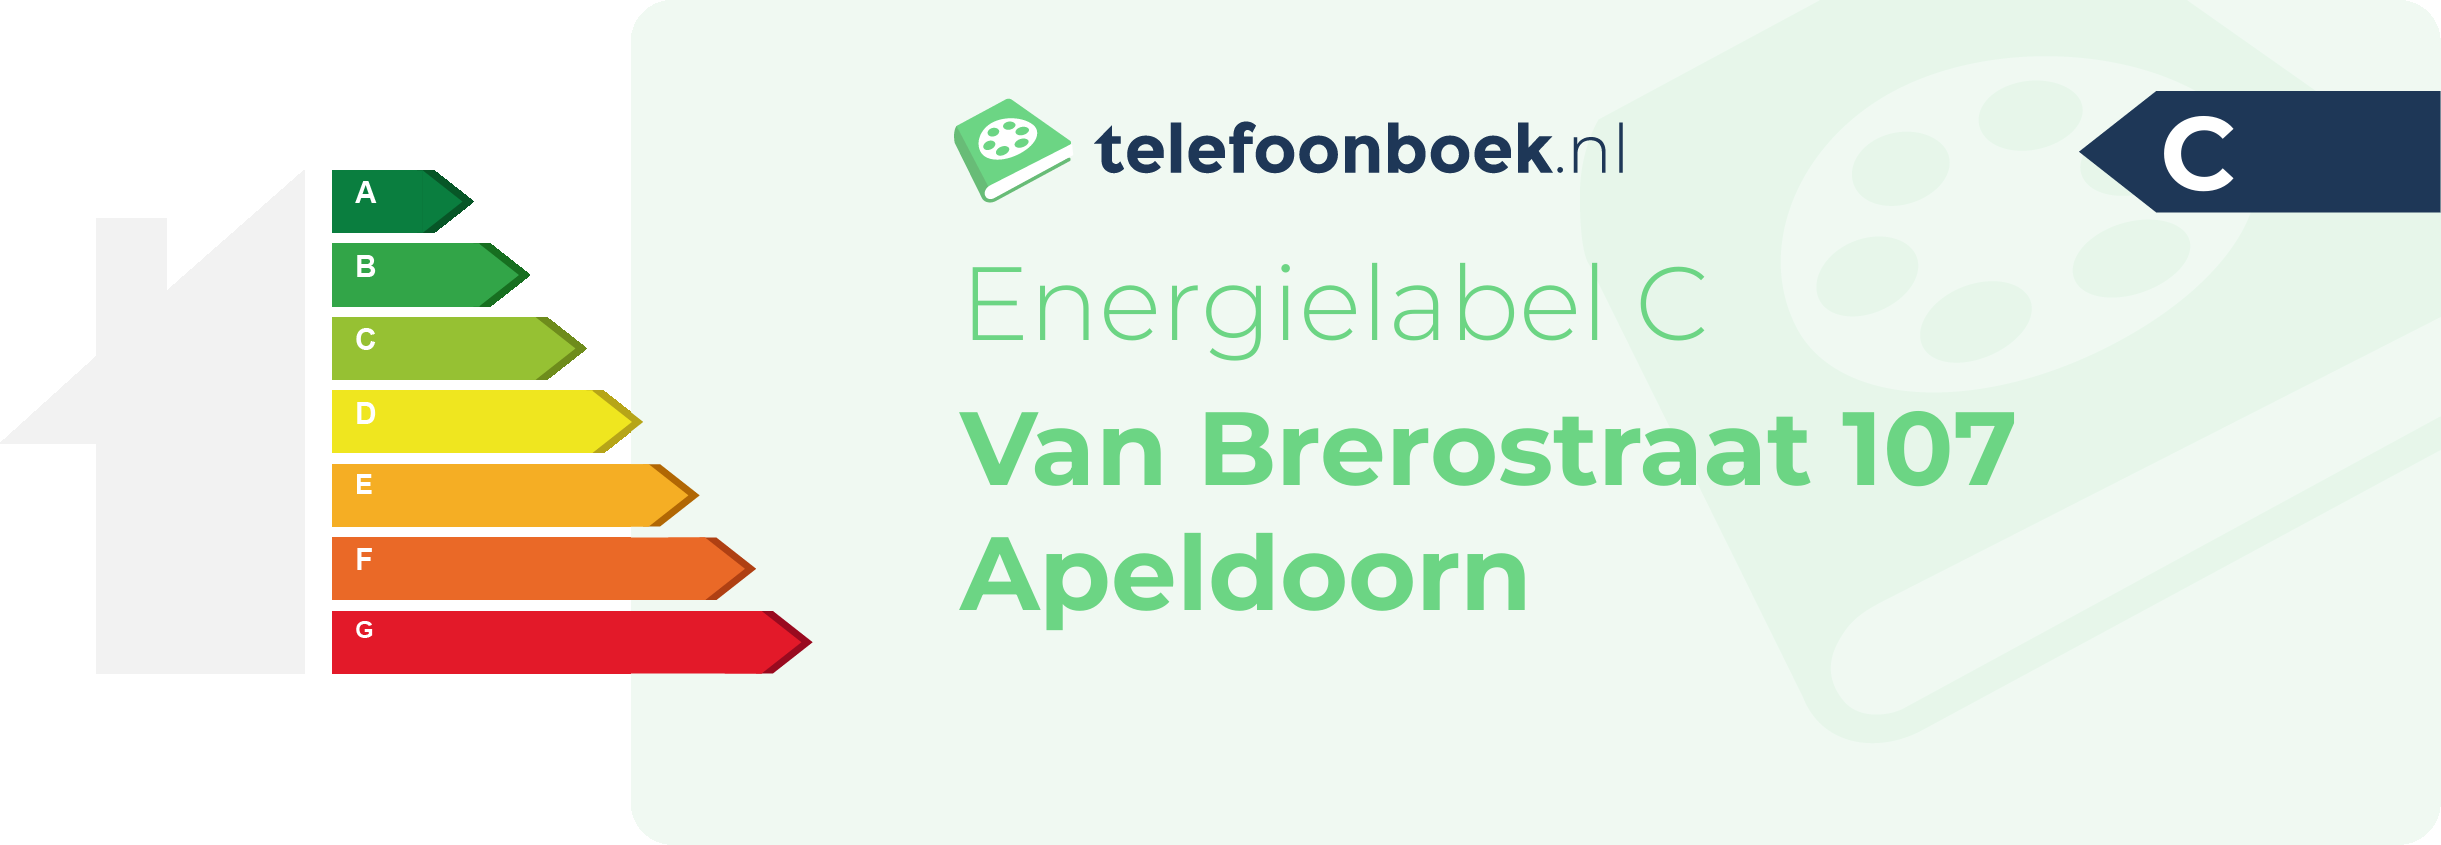 Energielabel Van Brerostraat 107 Apeldoorn